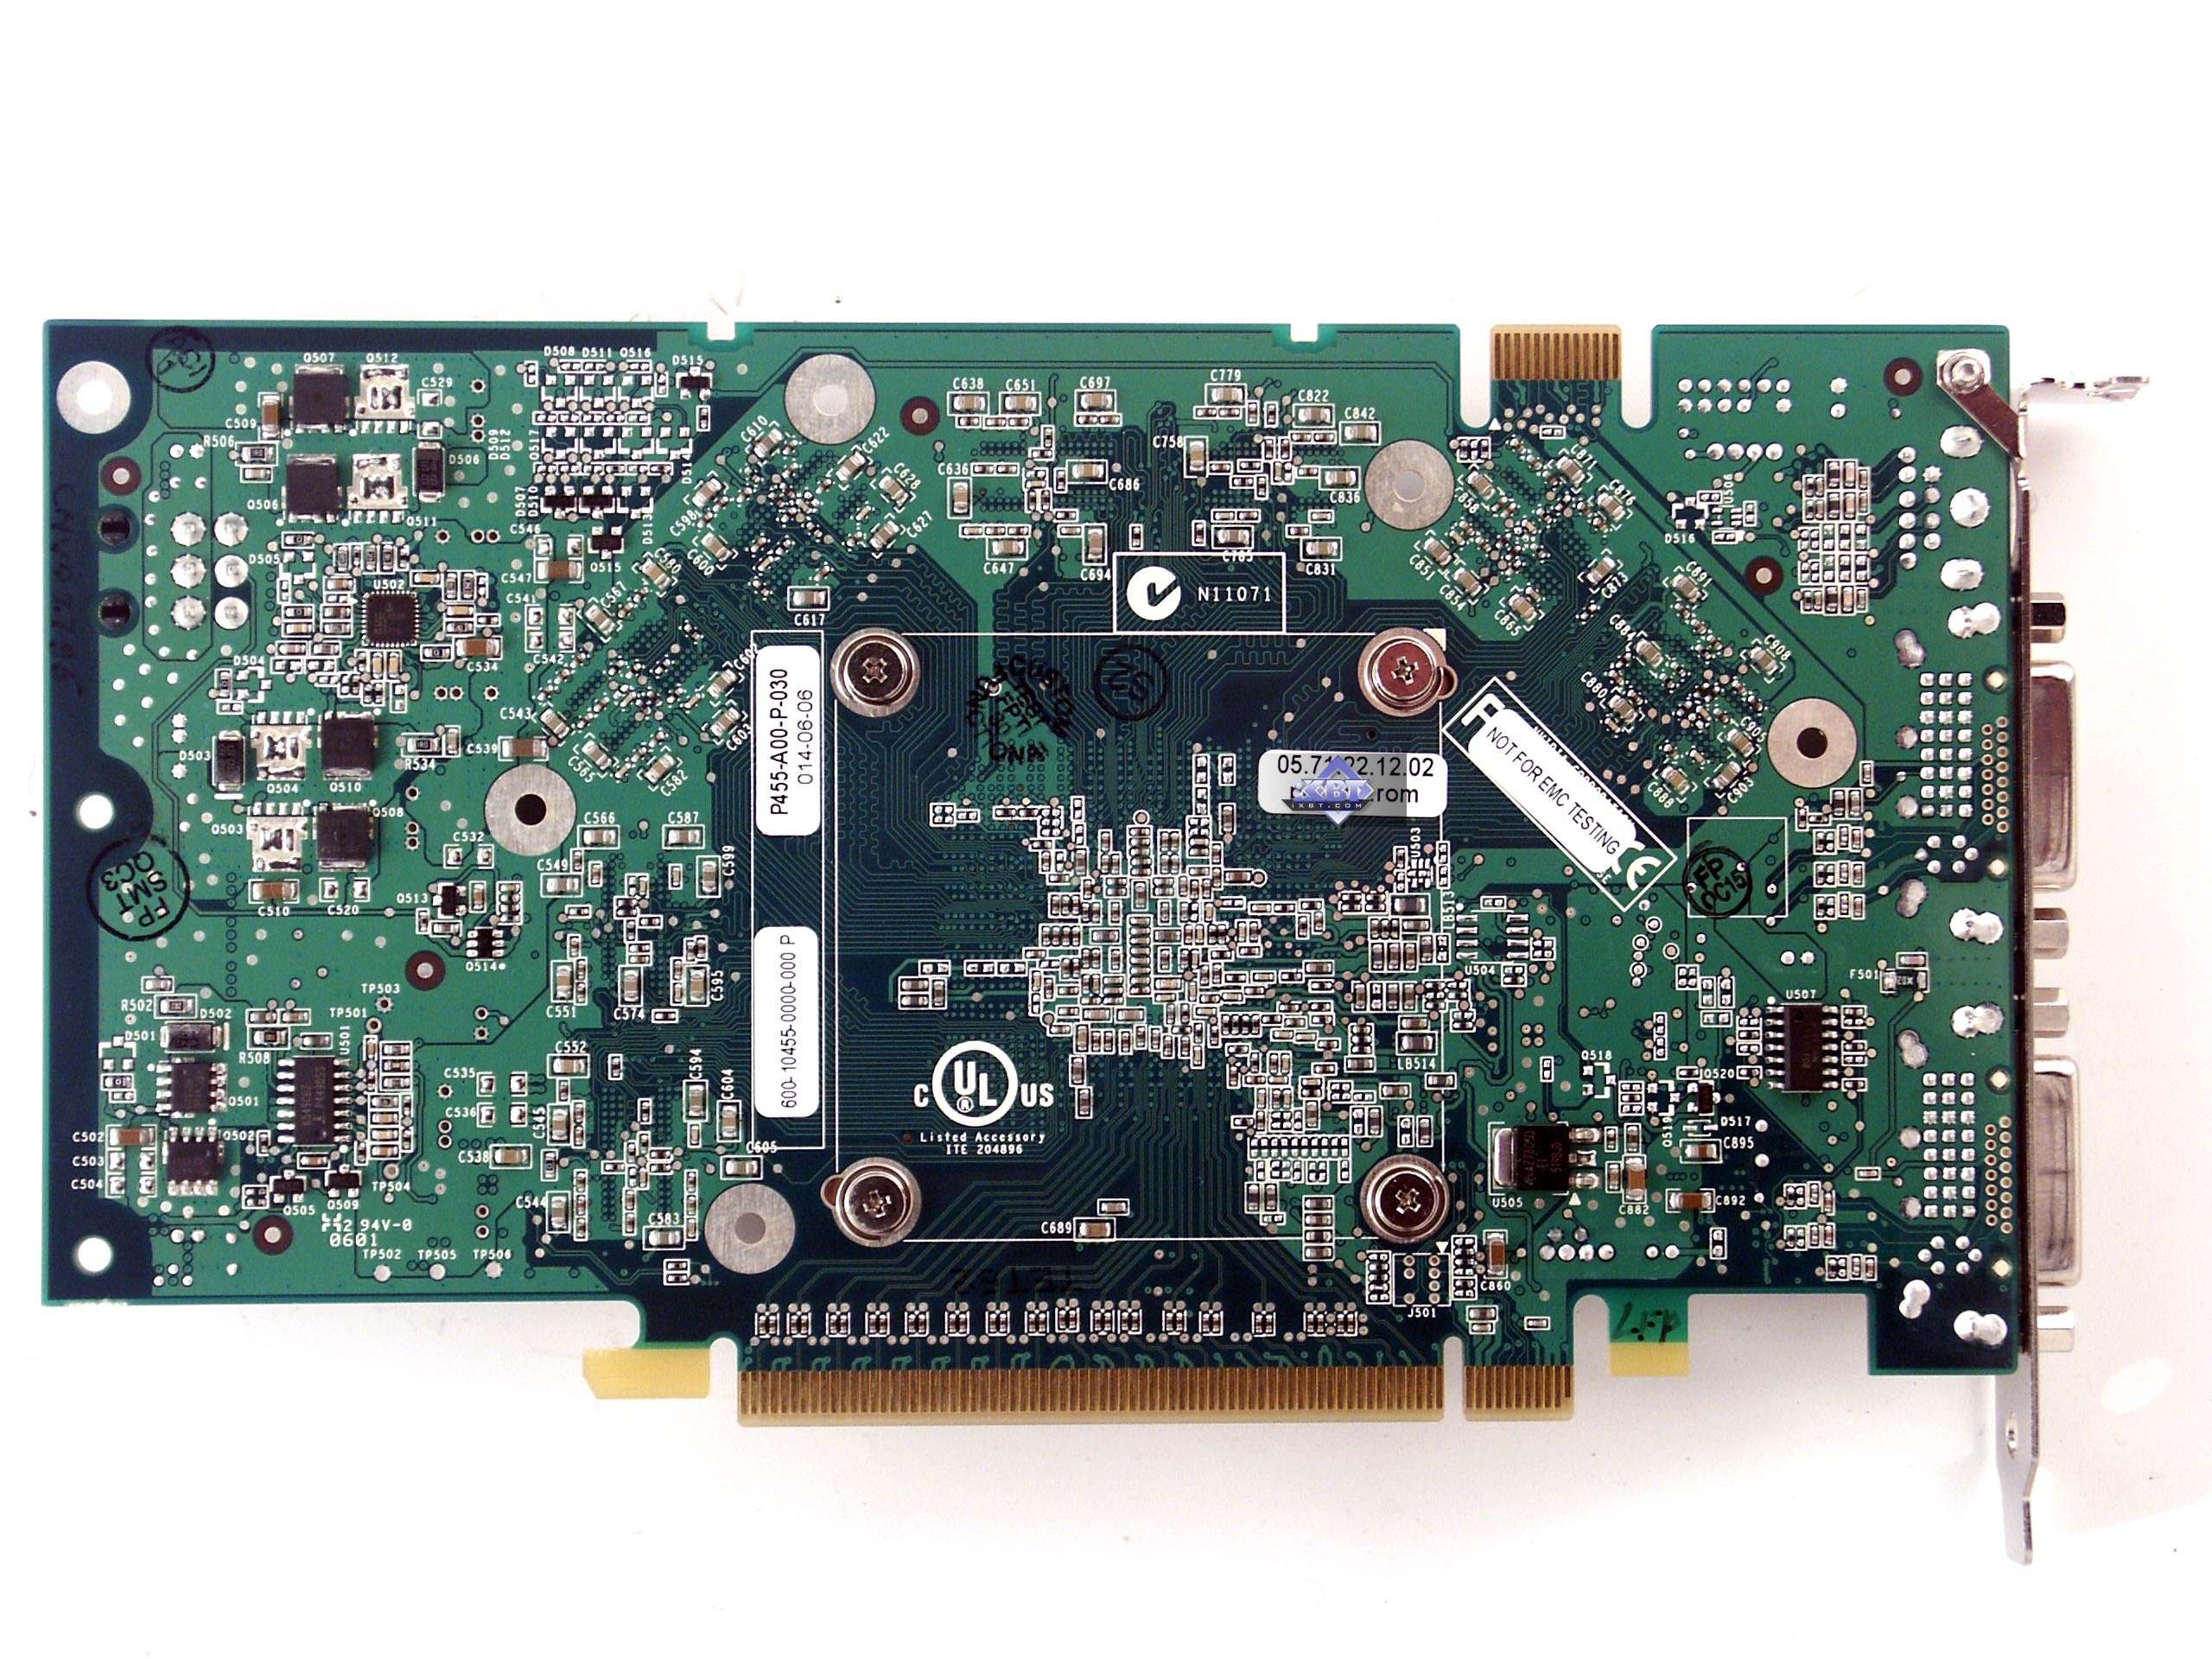 NVIDIA GeForce 7900 GS 256MB PCI-E